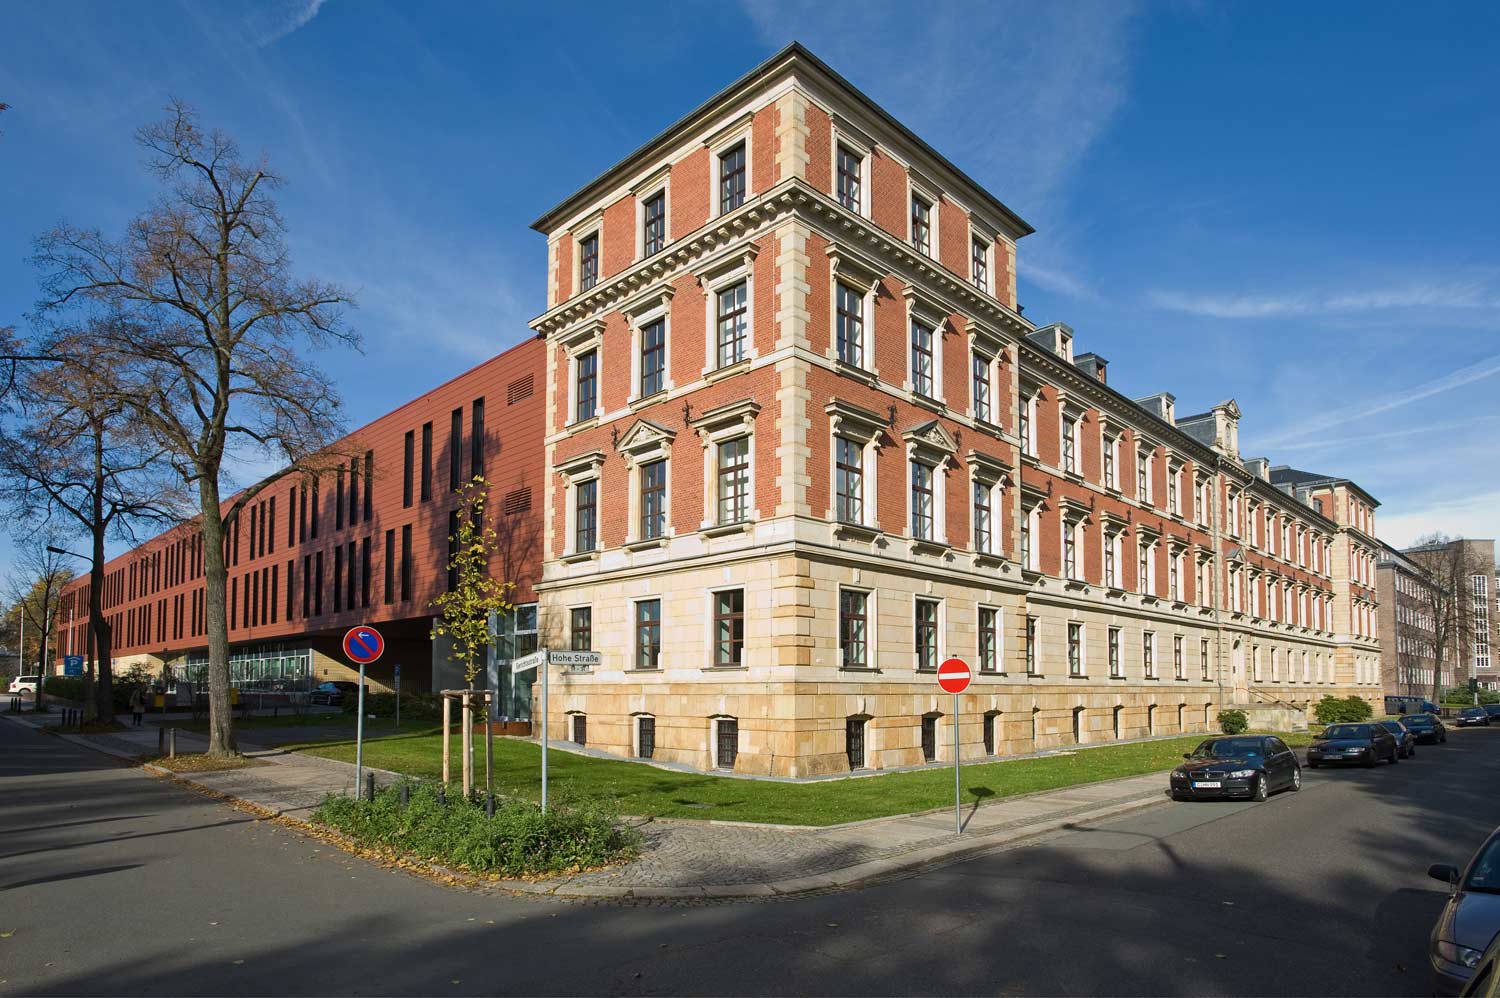 Justizzentrum Chemnitz